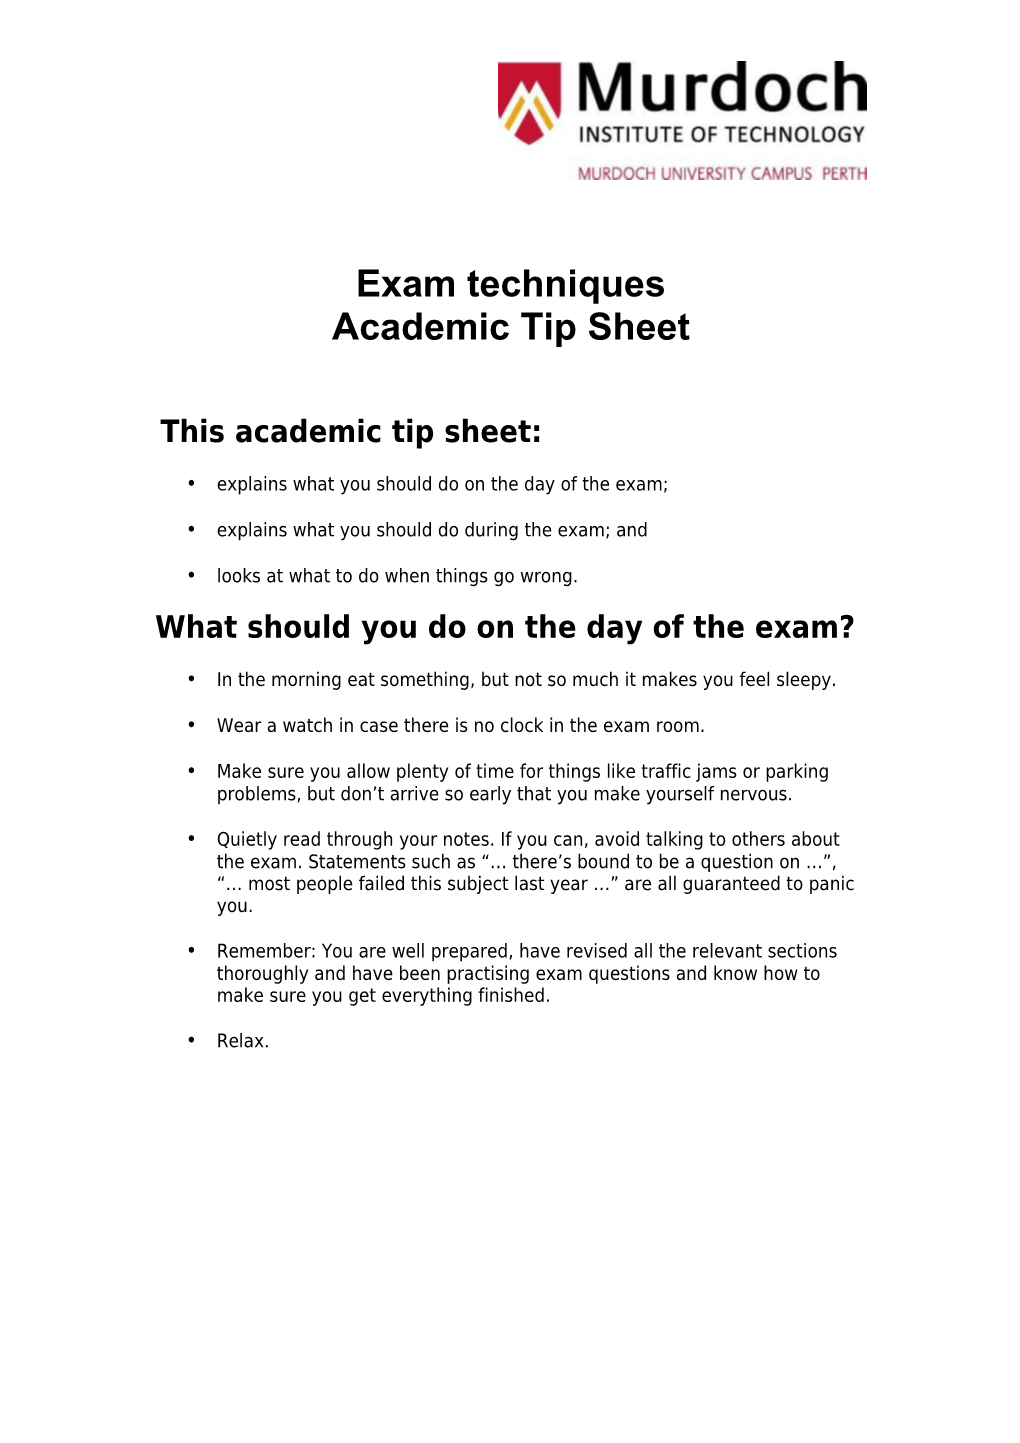 Academic Tip Sheet